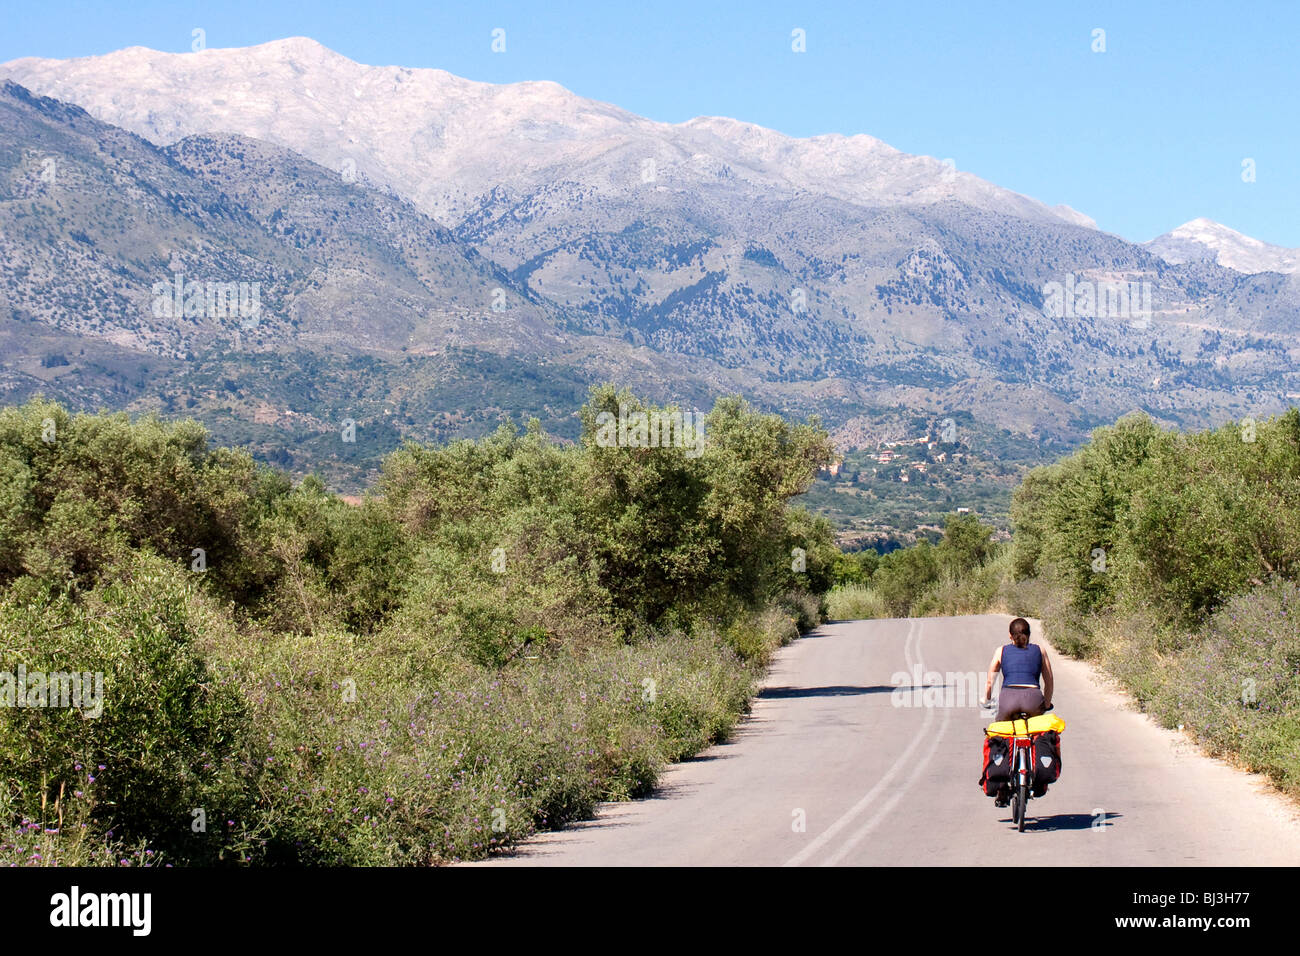 Cycliste sur route, avec vue sur les montagnes Blanches, Lefka Ori, près de Vamos, Crète, Grèce, Europe Banque D'Images